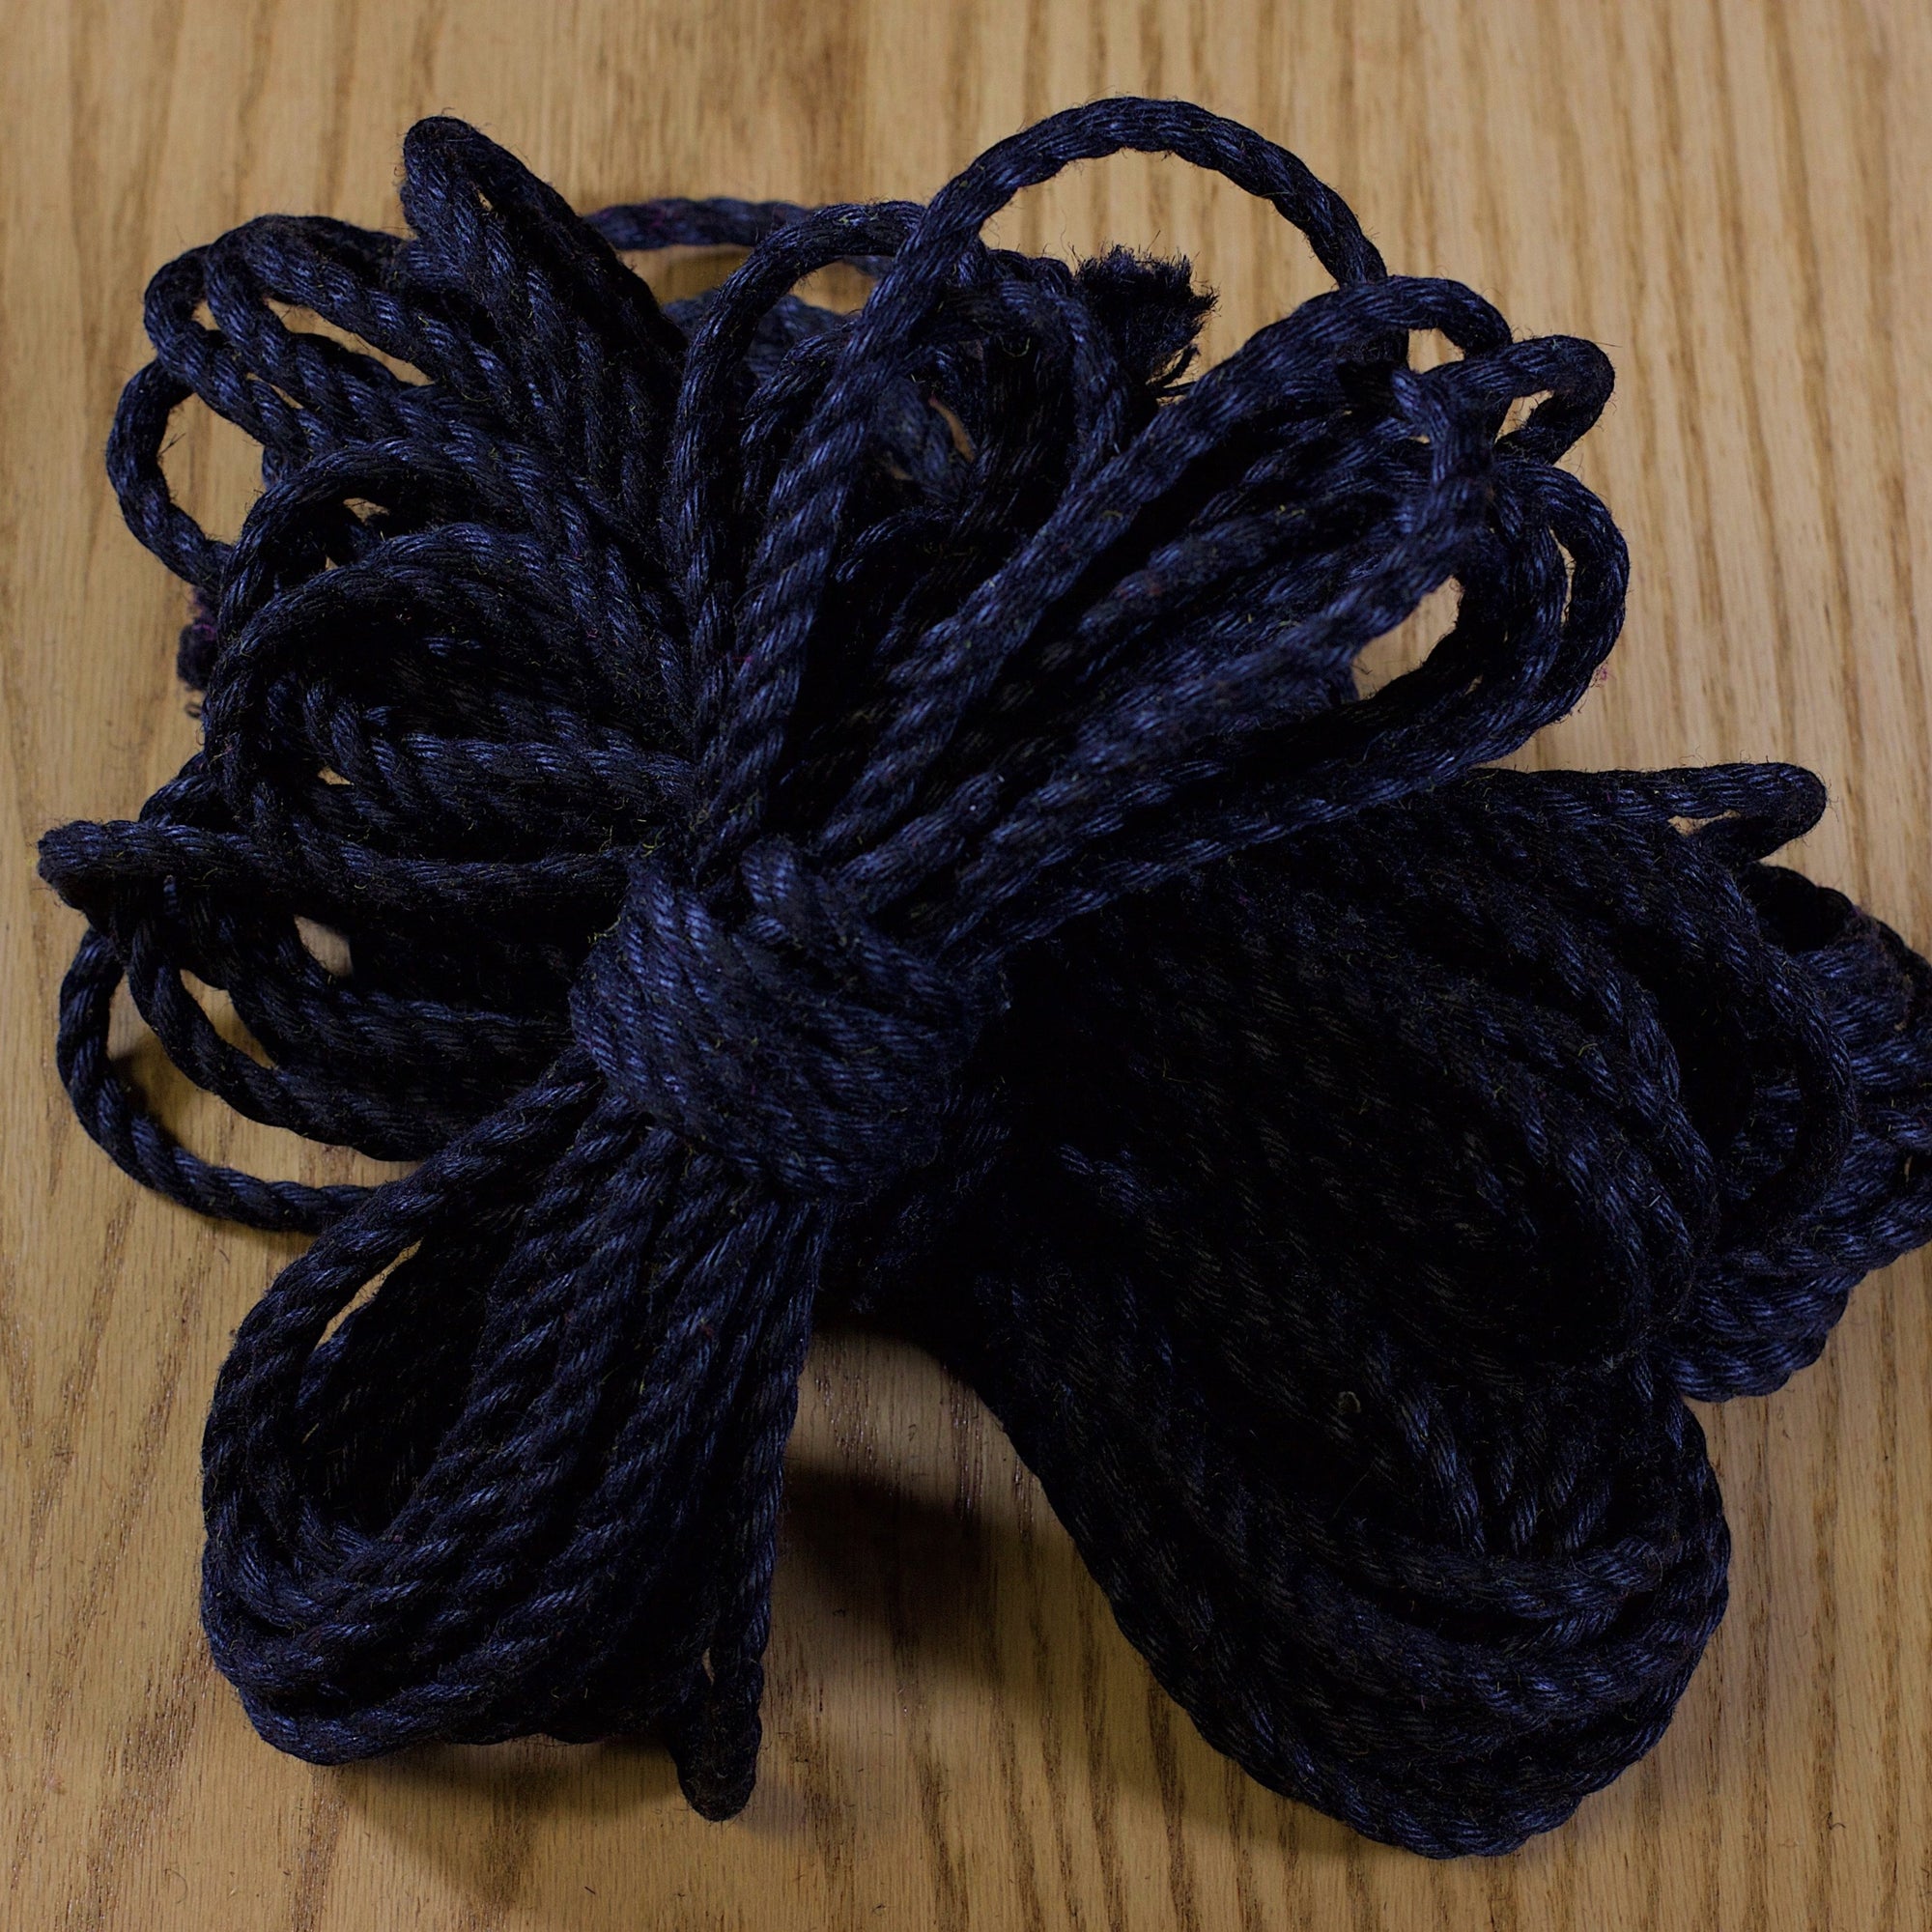 Jute rope Shibari quality by Tension - Black